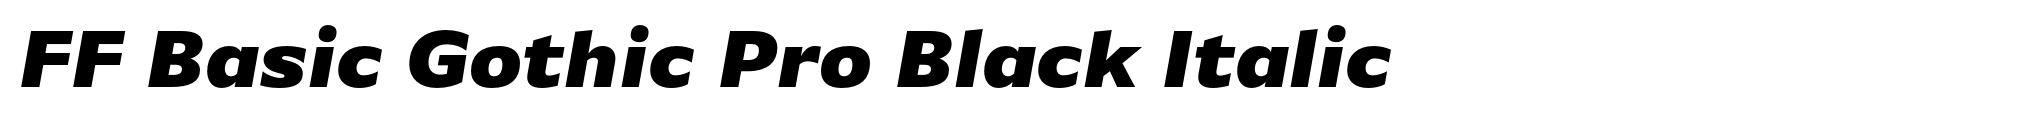 FF Basic Gothic Pro Black Italic image